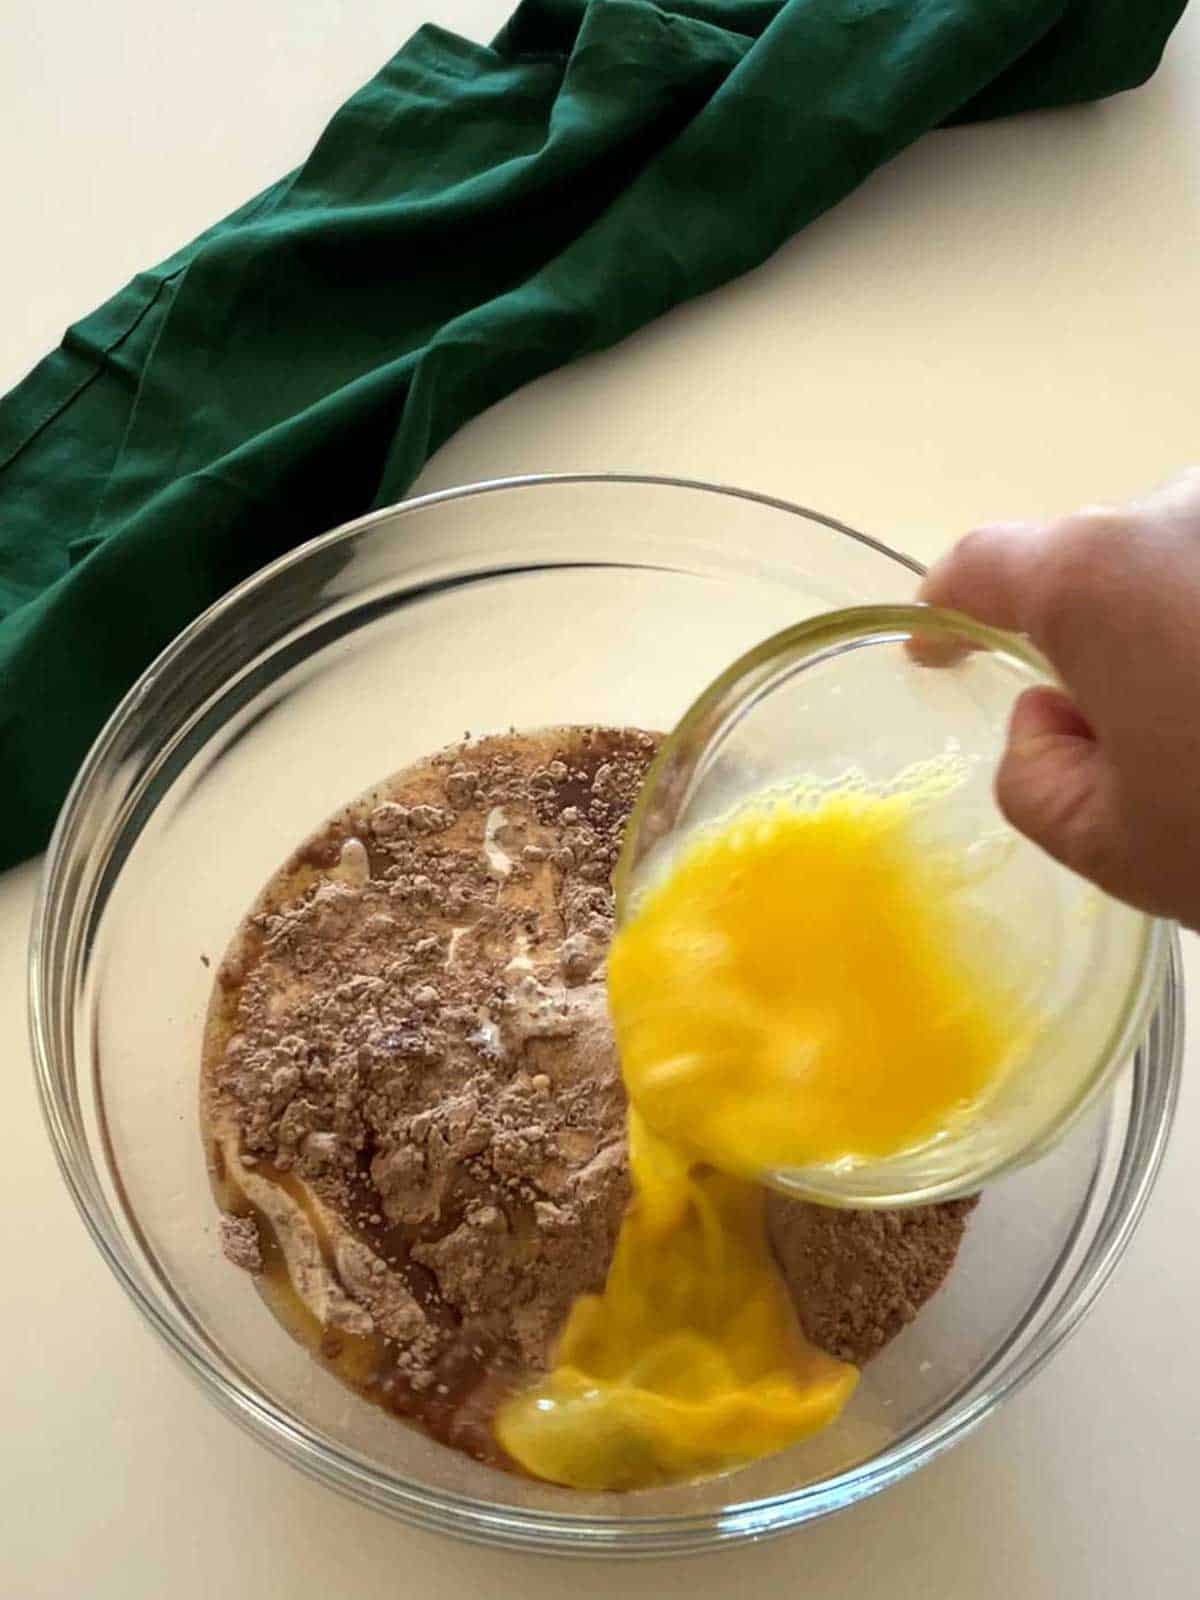 Adding eggs